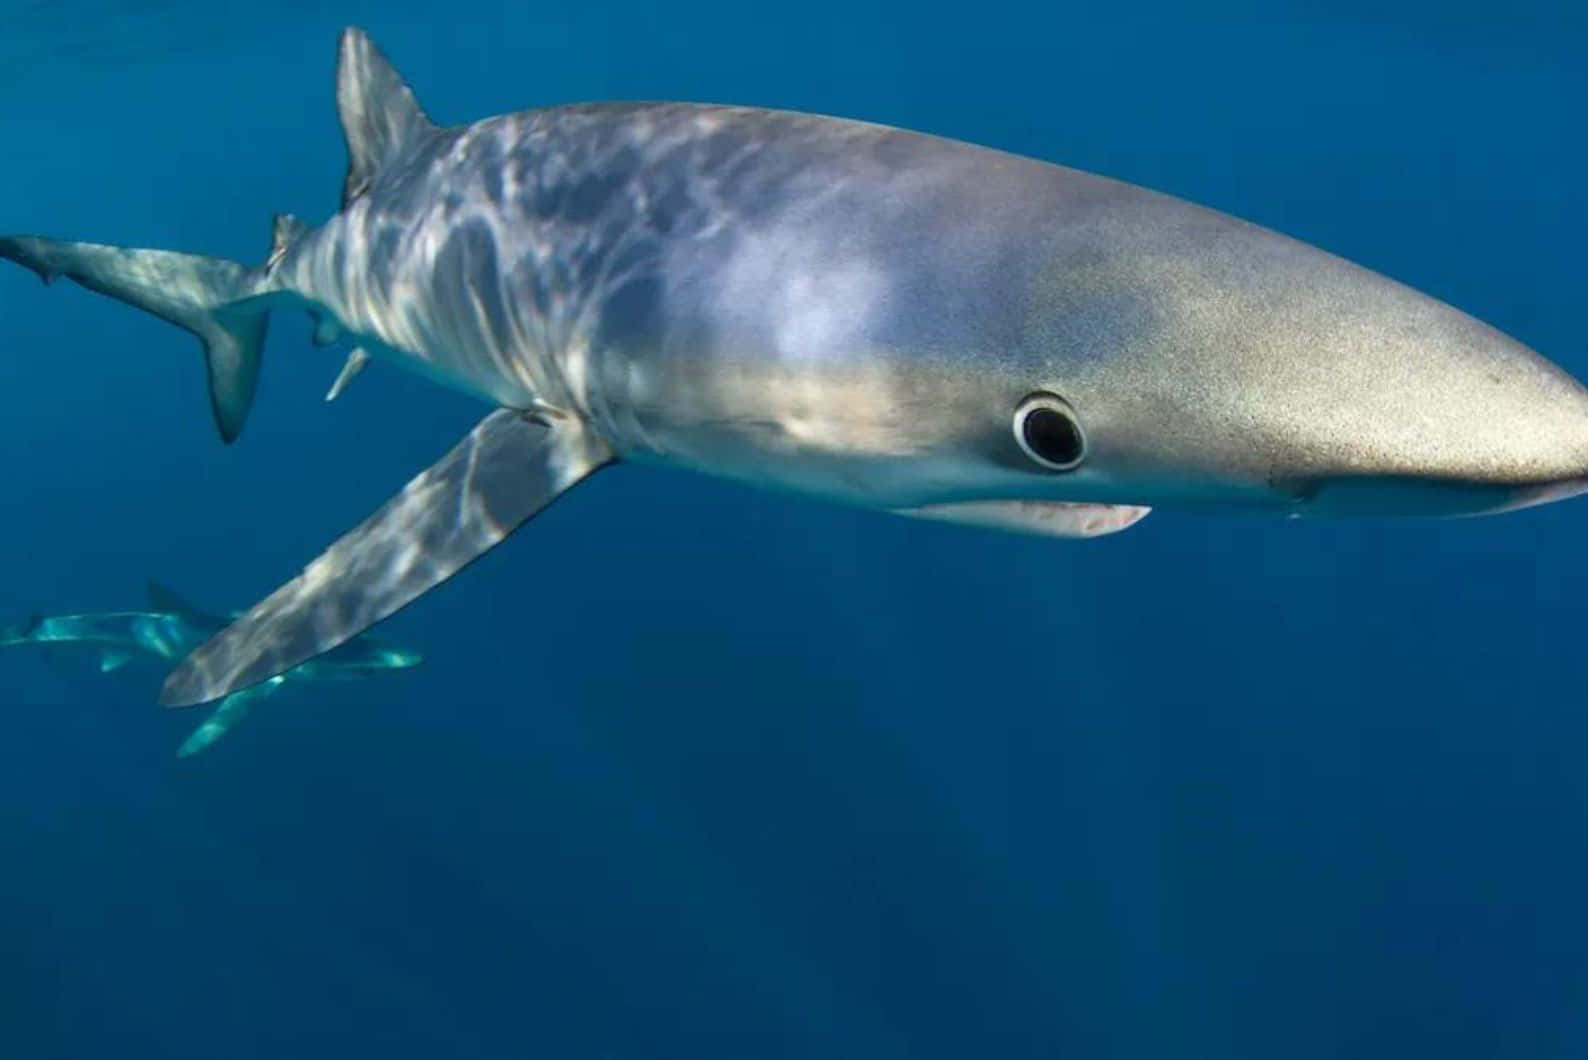 Blue Shark Underwater Swimming.jpg Wallpaper